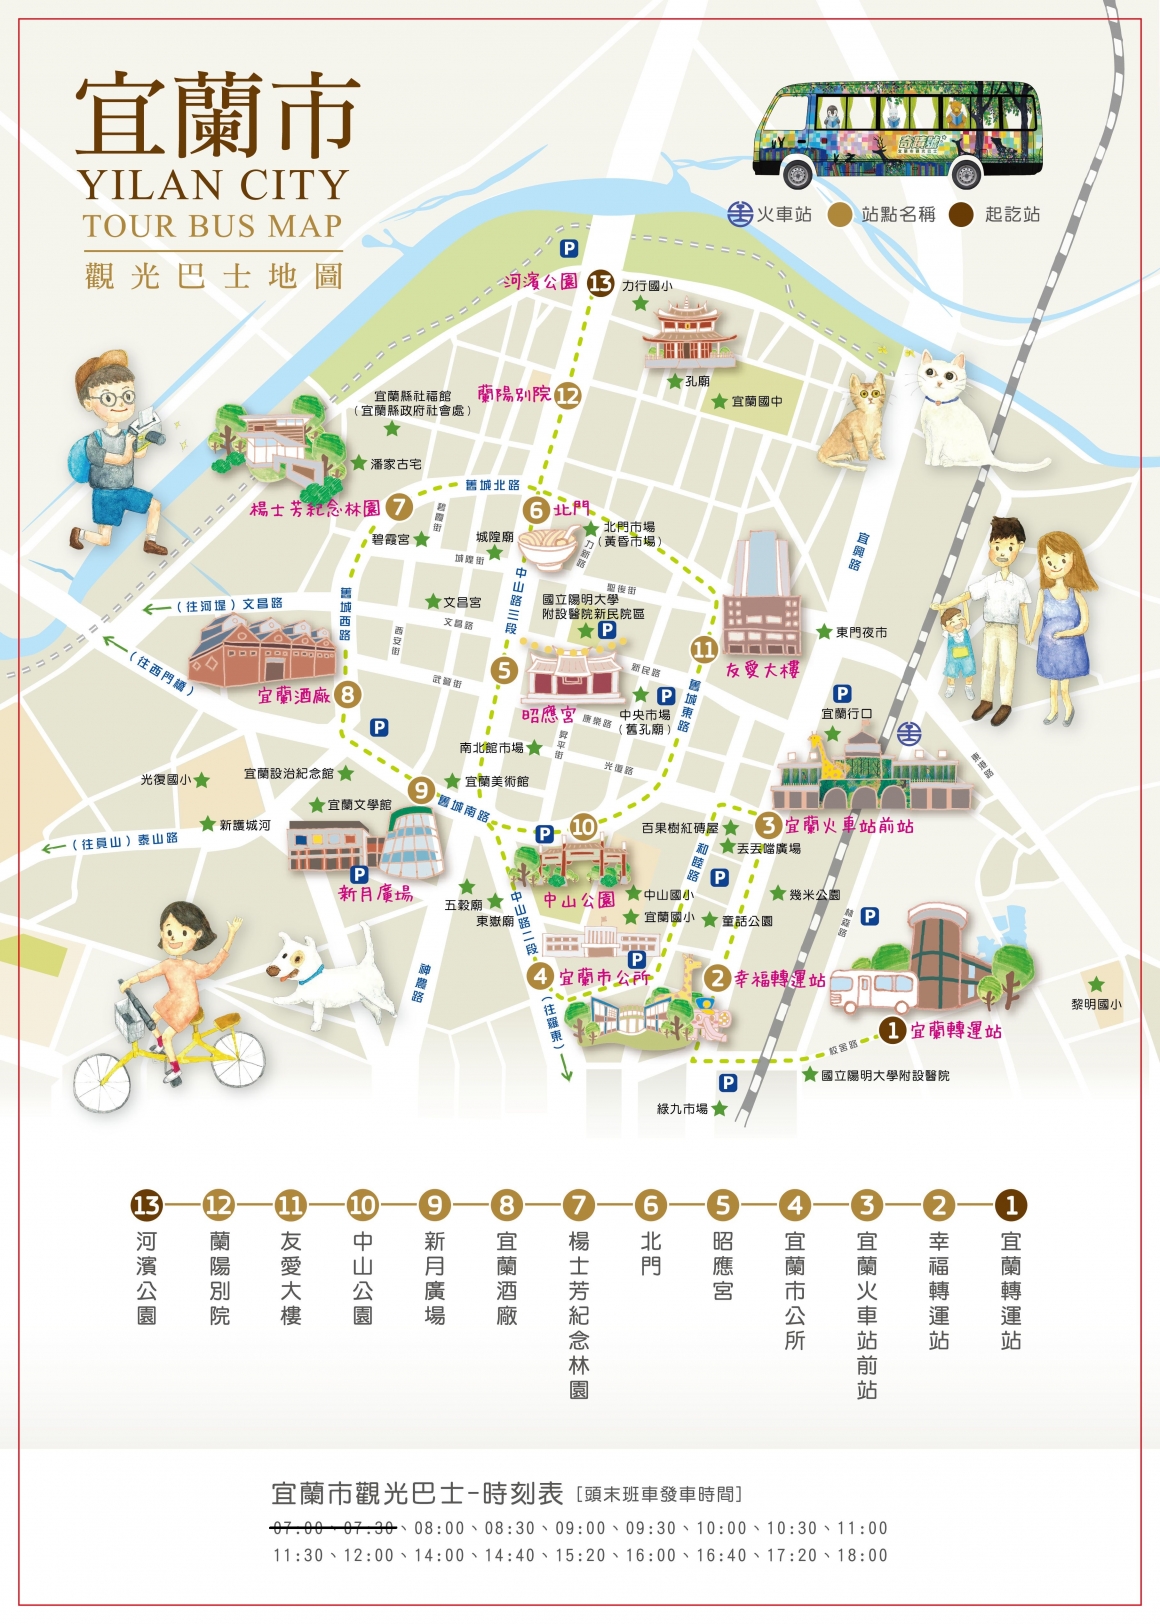 宜蘭市觀光巴士地圖與時刻表(105年9月) (2)